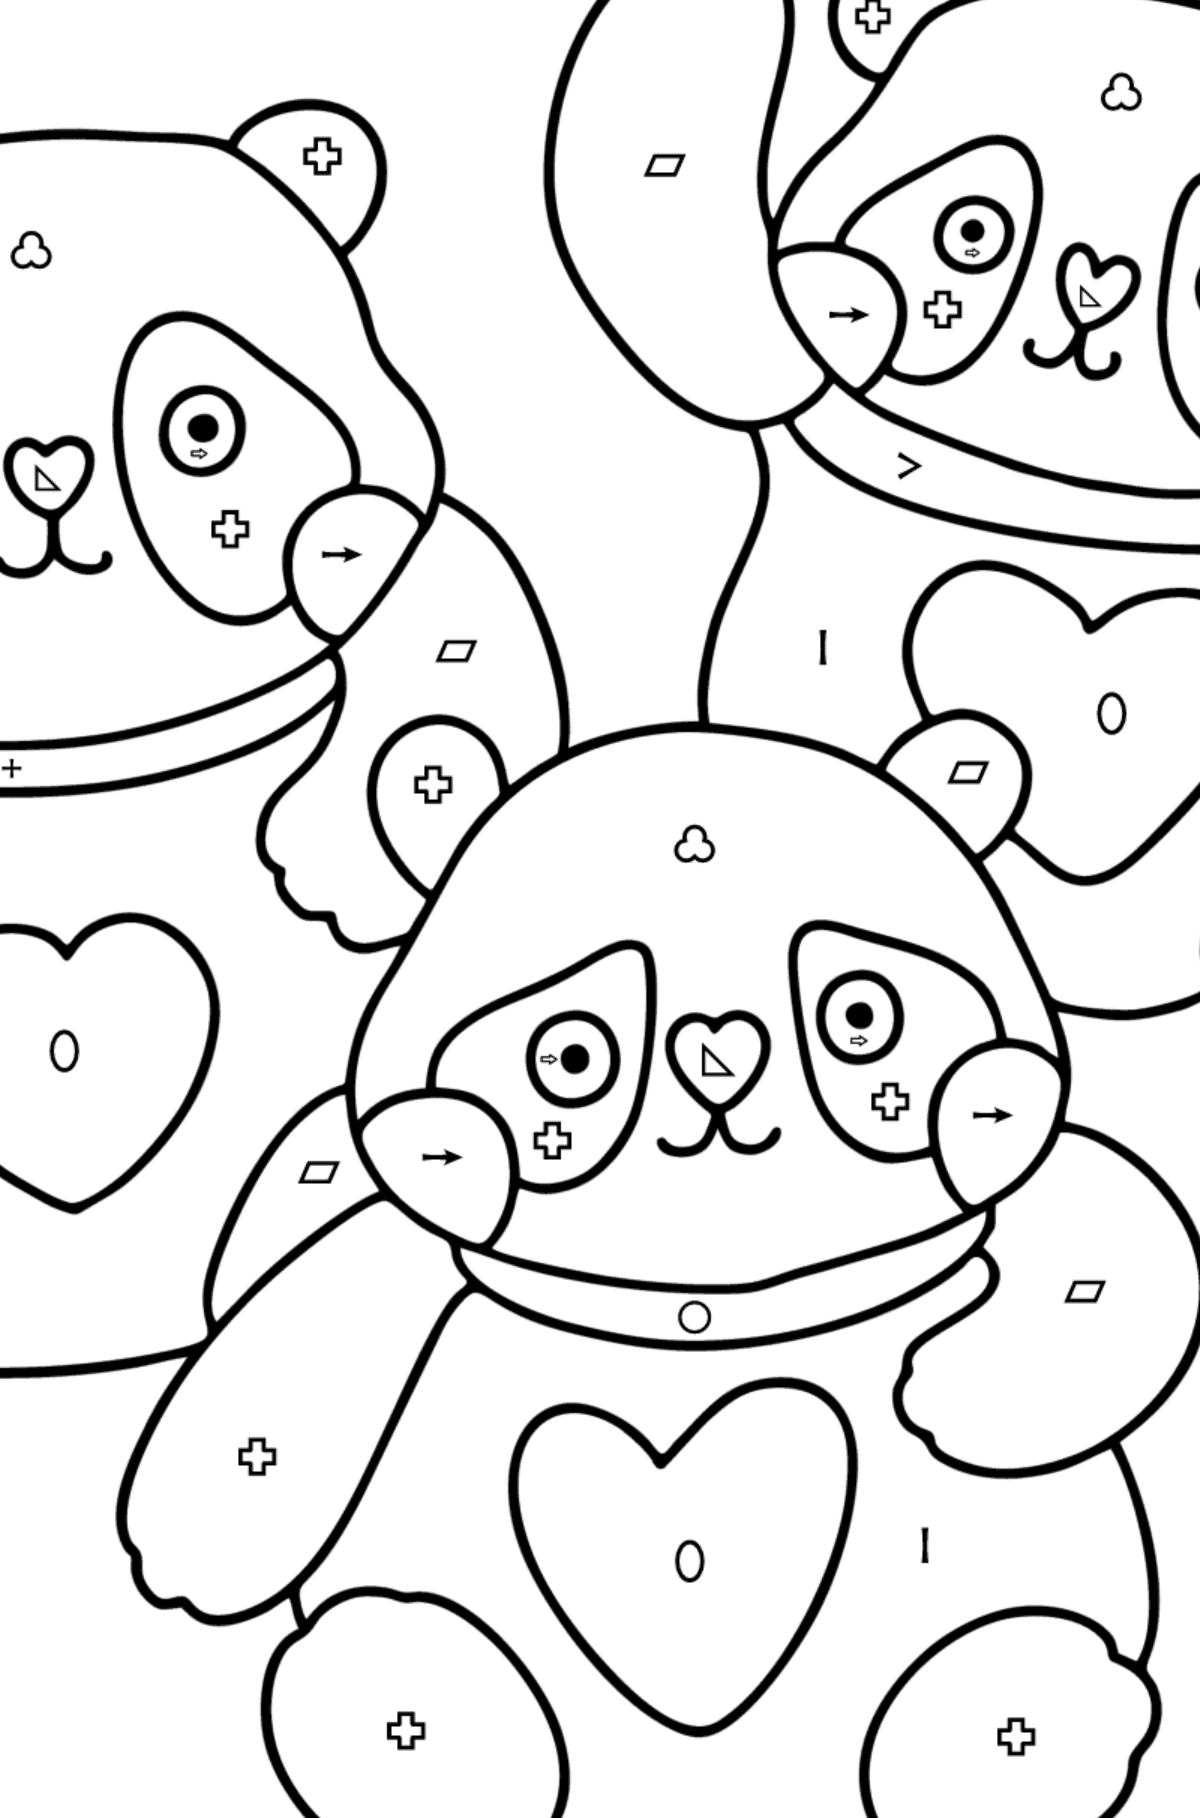 Kolorowanka kawaii pandy - Kolorowanie według symboli i figur geometrycznych dla dzieci